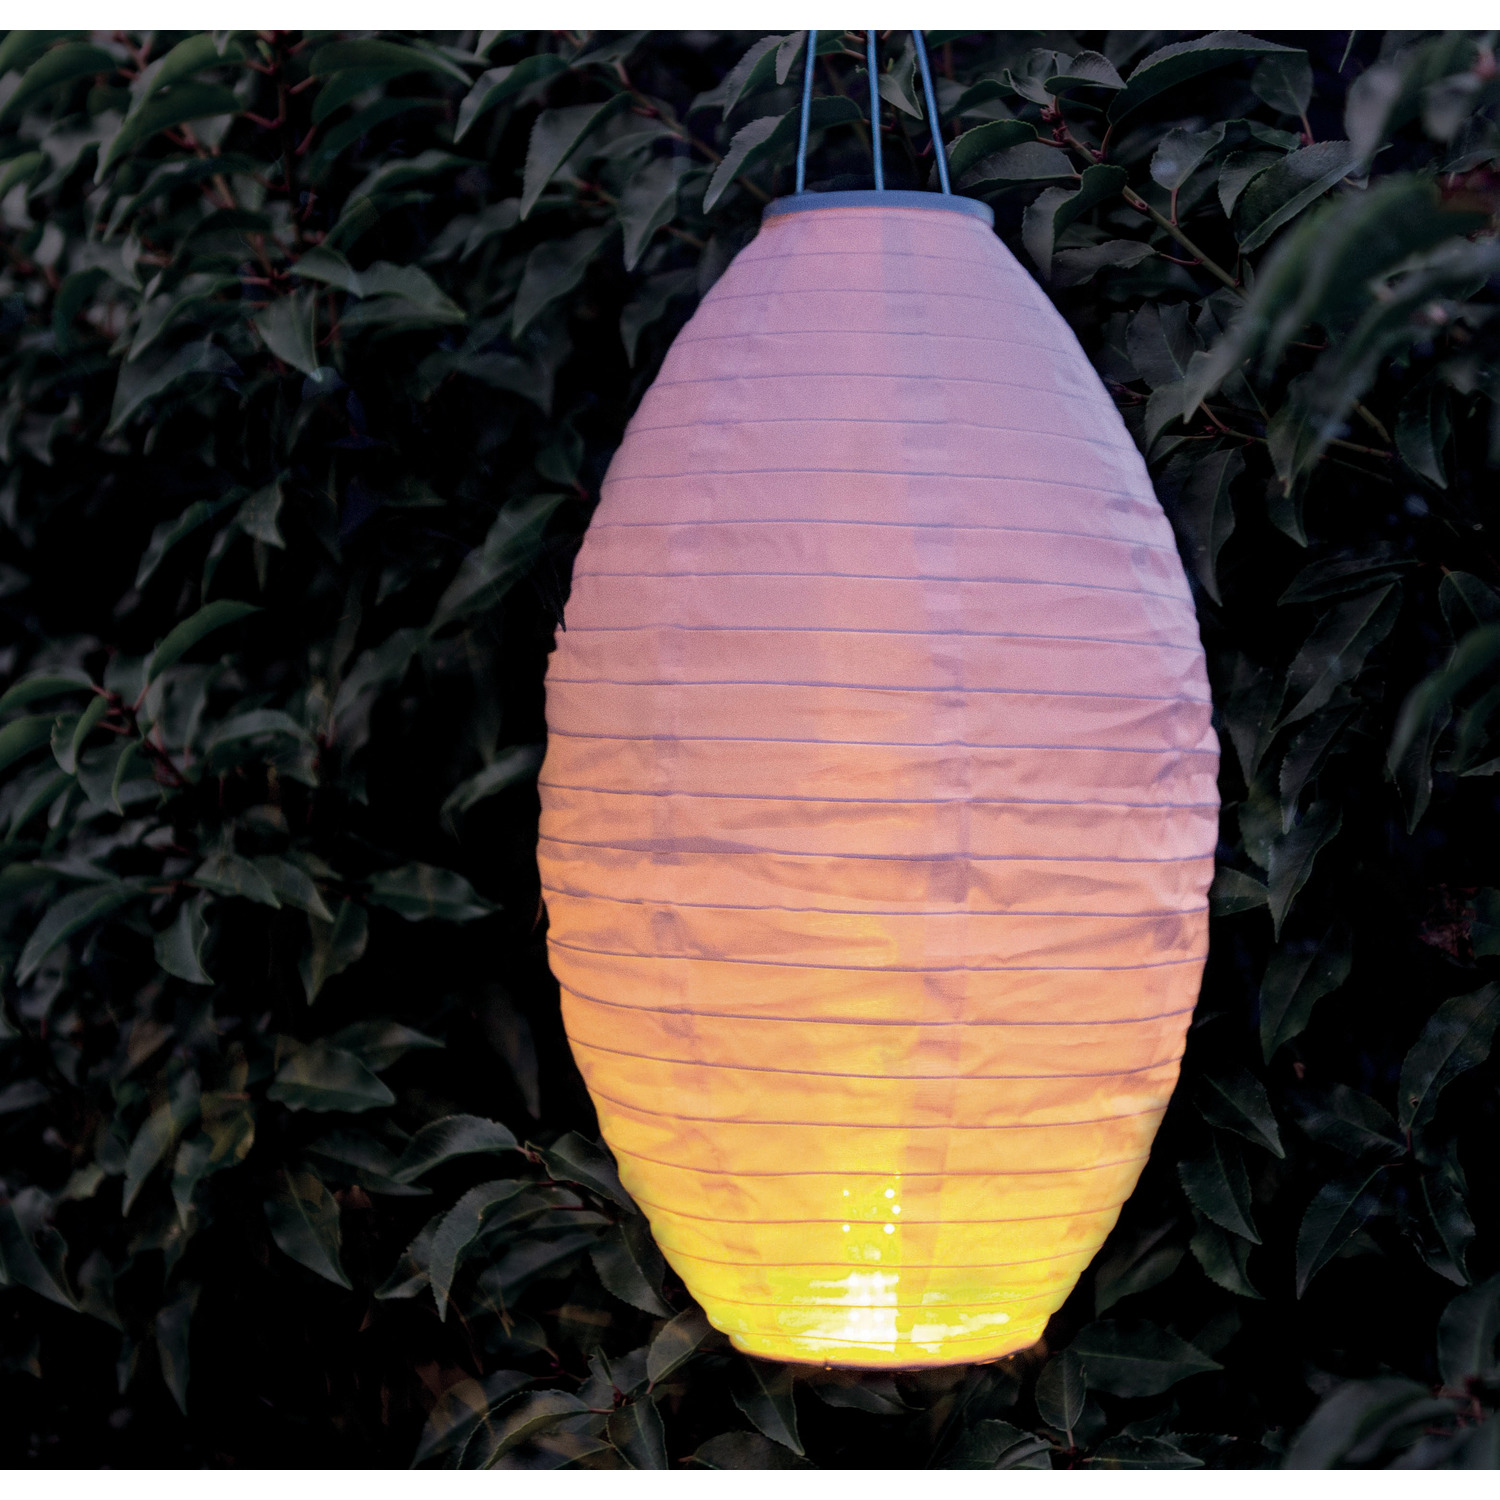 9x stuks luxe solar lampion-lampionnen wit met realistisch vlameffect 30 x 50 cm